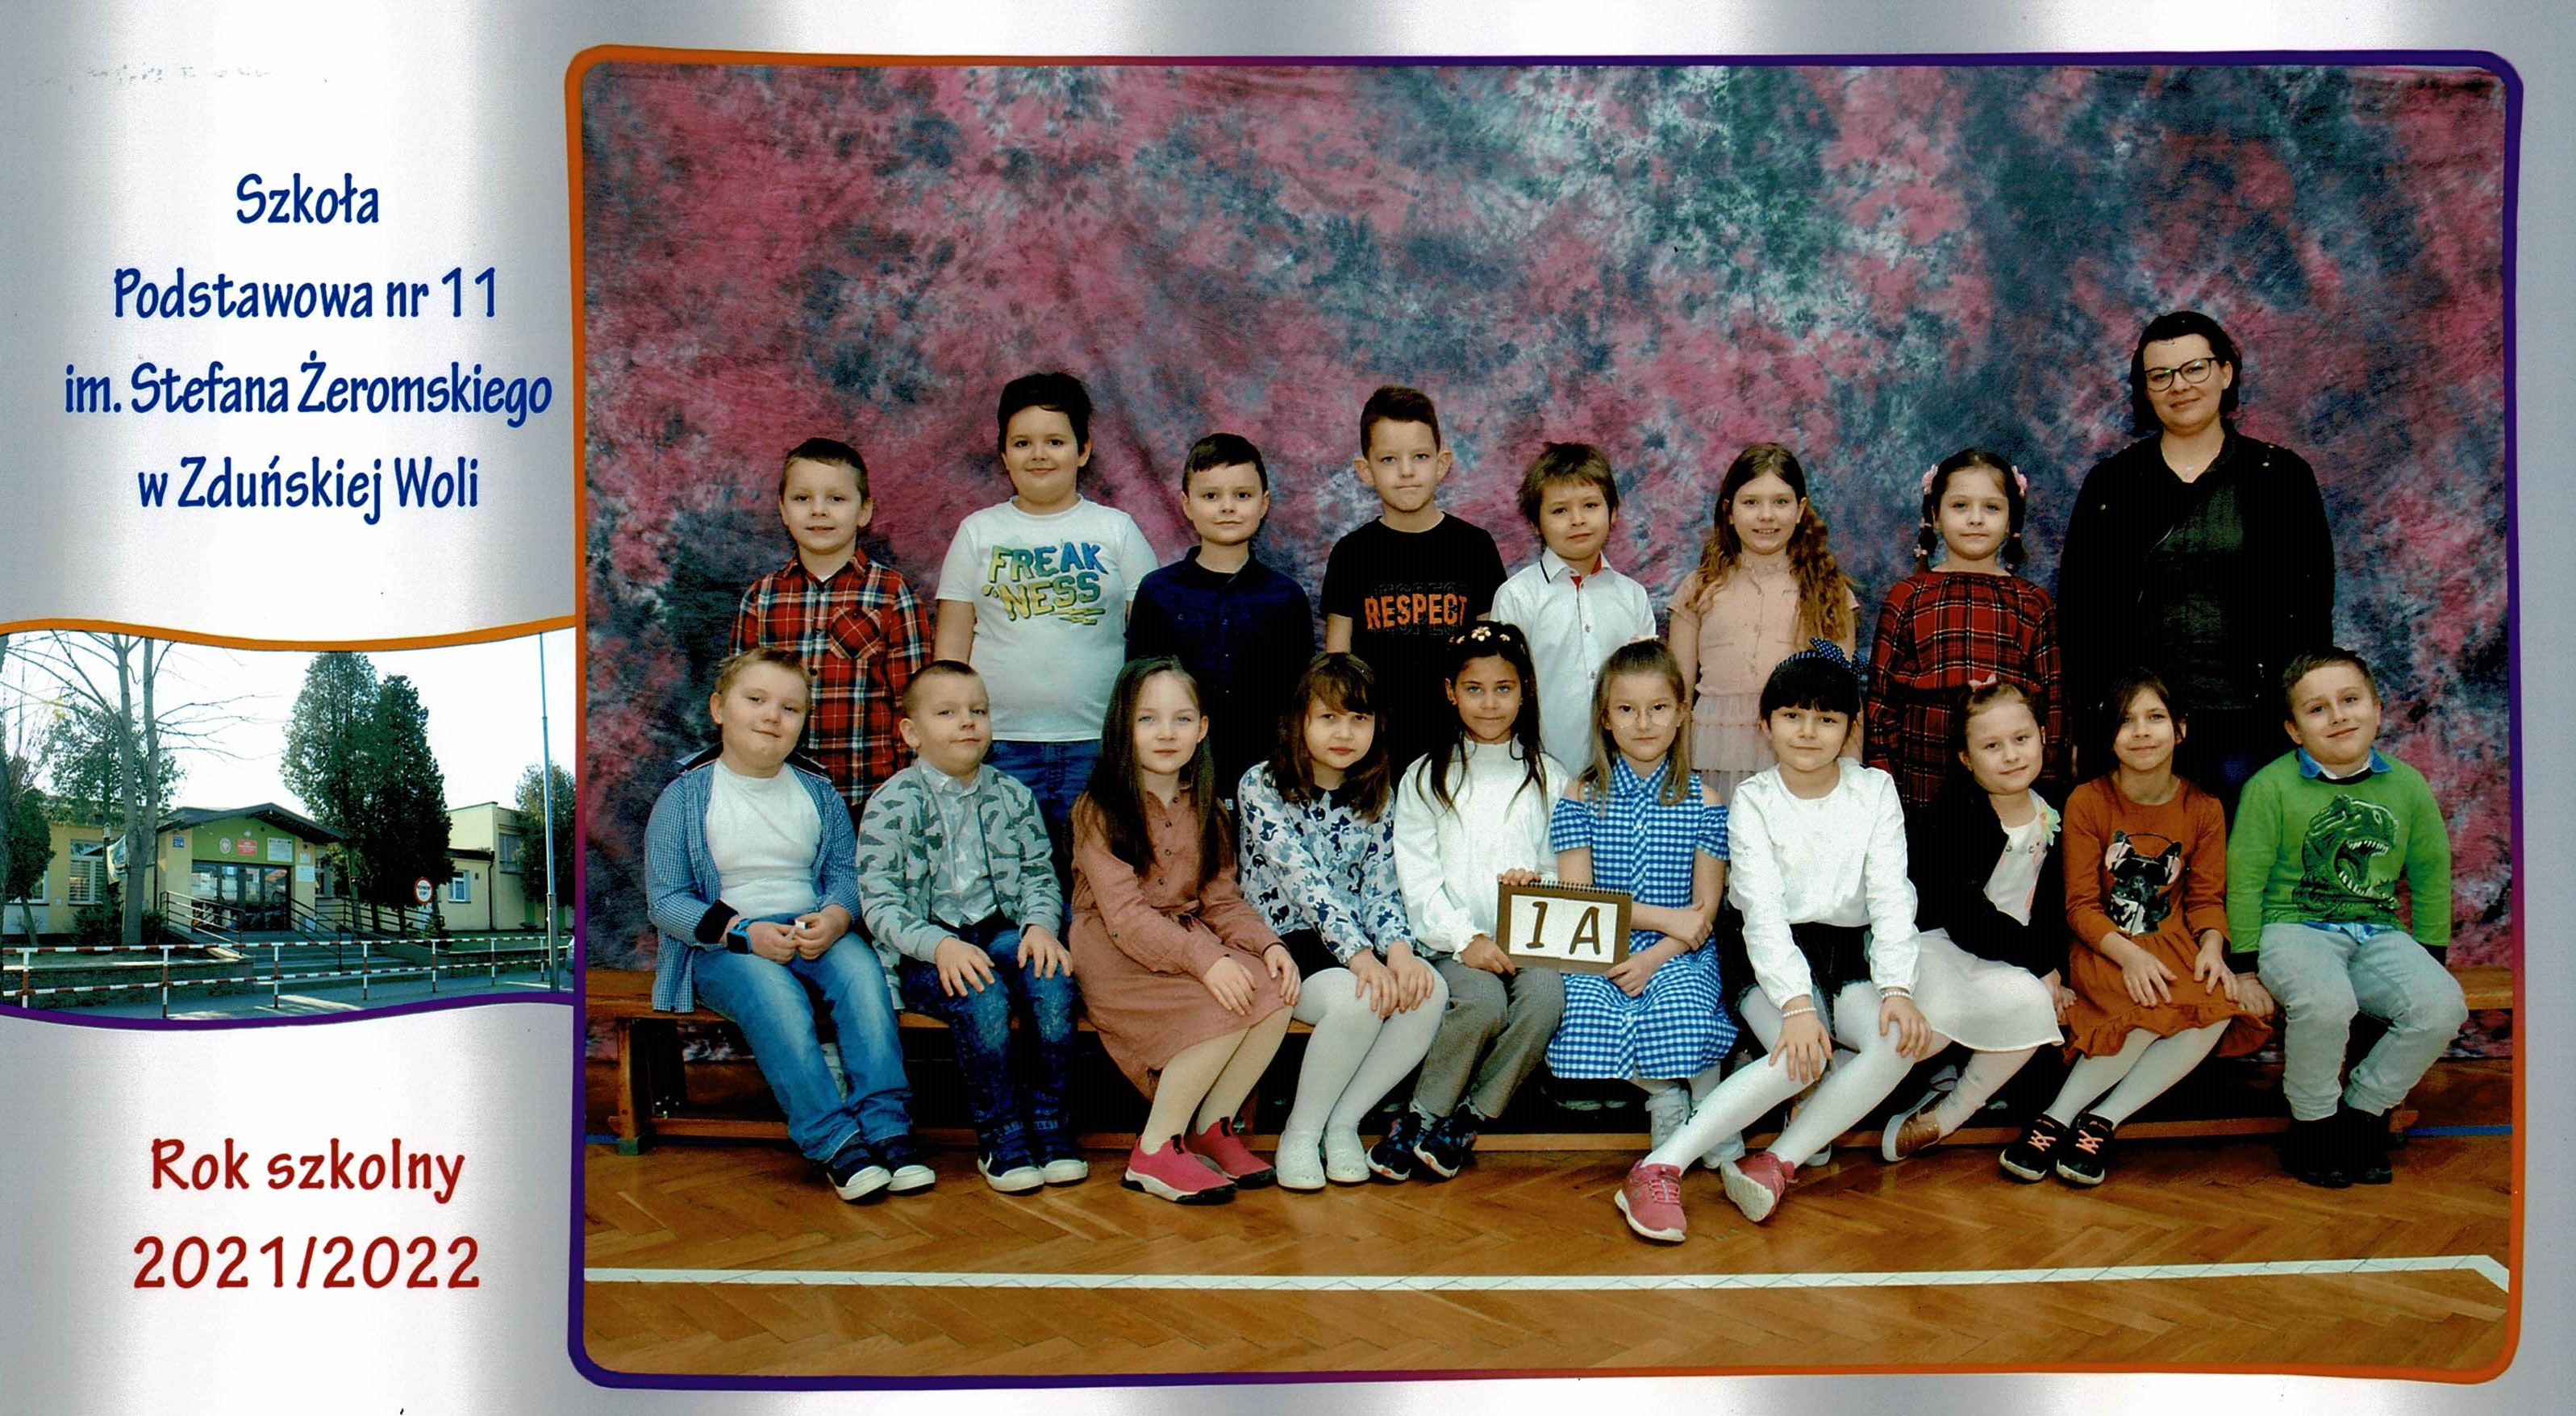 Uczniowie klasy 1A, dziewczynki i chłopcy siedzący na ławce z tabliczką "klasa 1a"